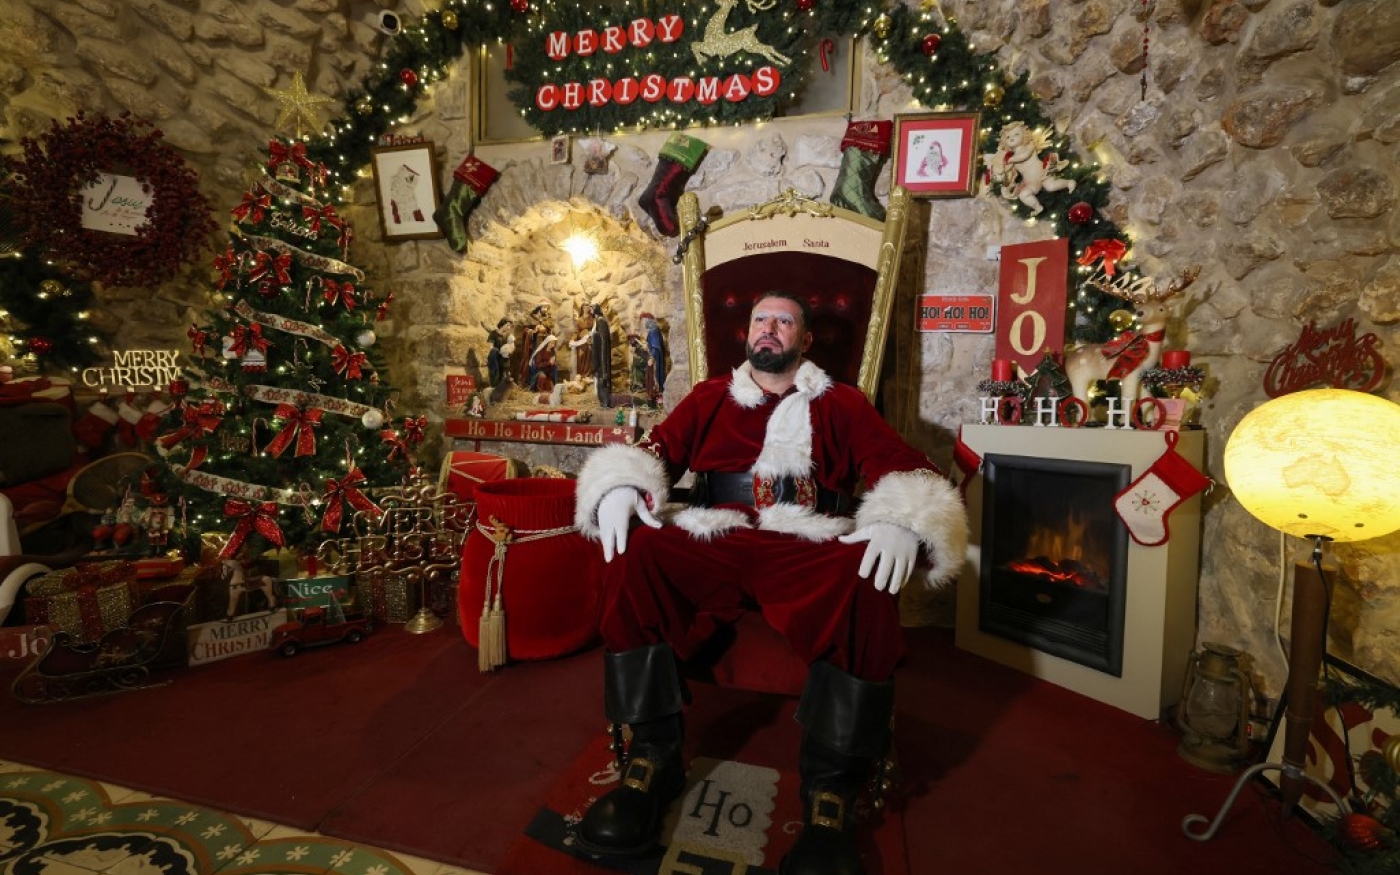 Le Palestinien Issa Kassissieh, habillé en père Noël, pose pour une photo dans la partie de sa maison transformée en Maison du père Noël, dans la Vieille ville de Jérusalem, quelques semaines avant les prochaines vacances de Noël, le 1er décembre 2022 (AFP/Ahmad Gharabali)